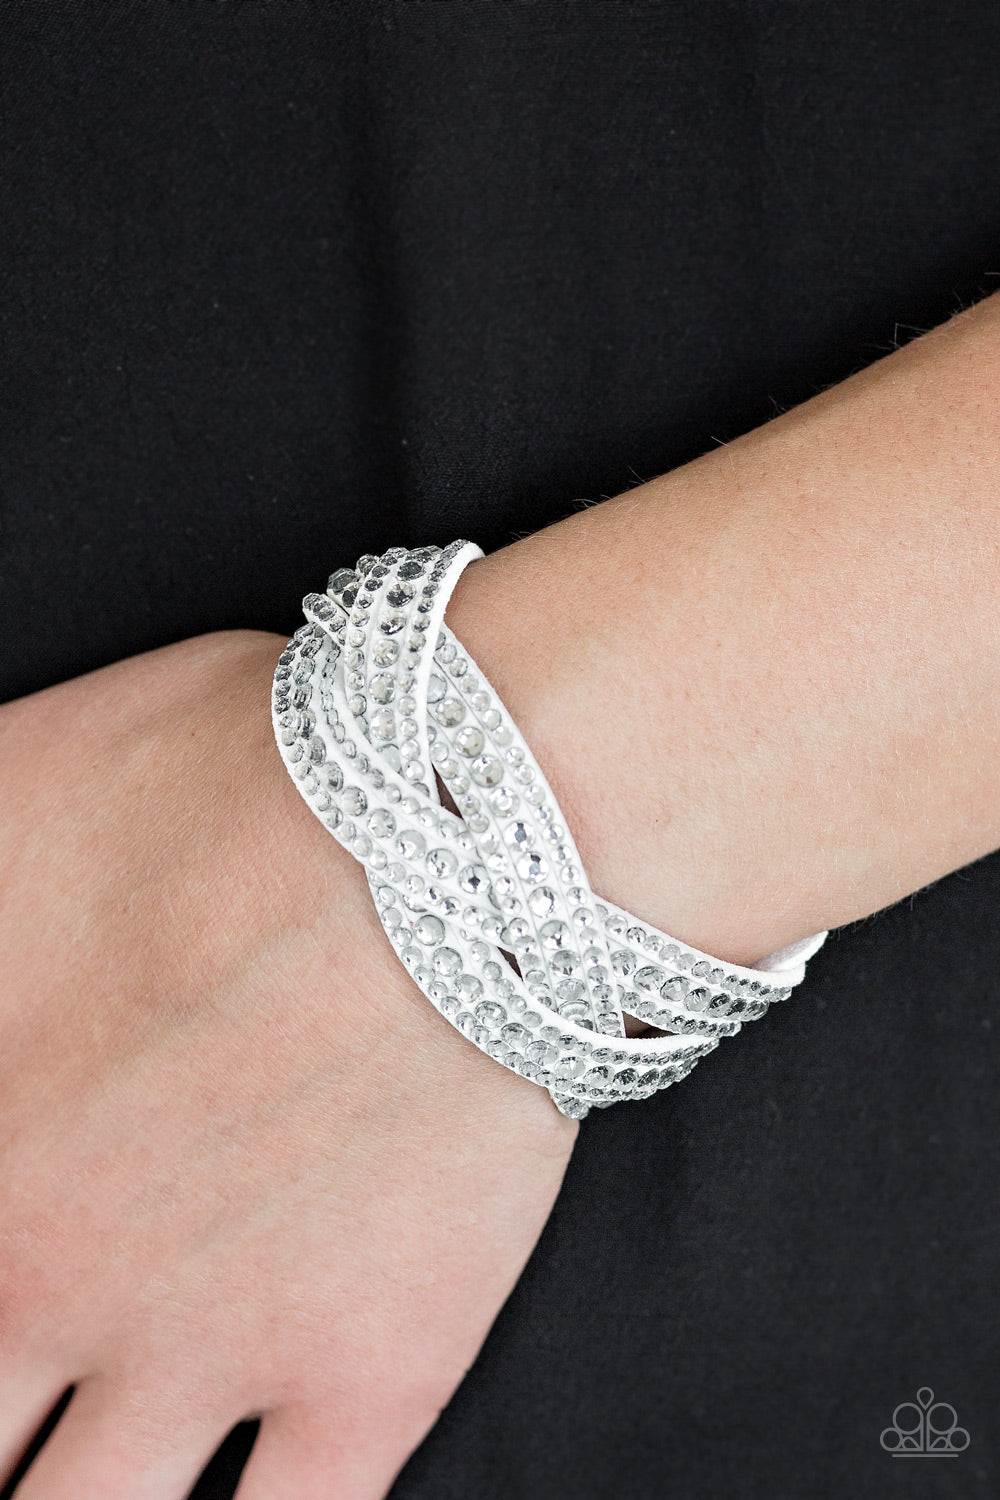 Bring On The Bling - White wrap bracelet